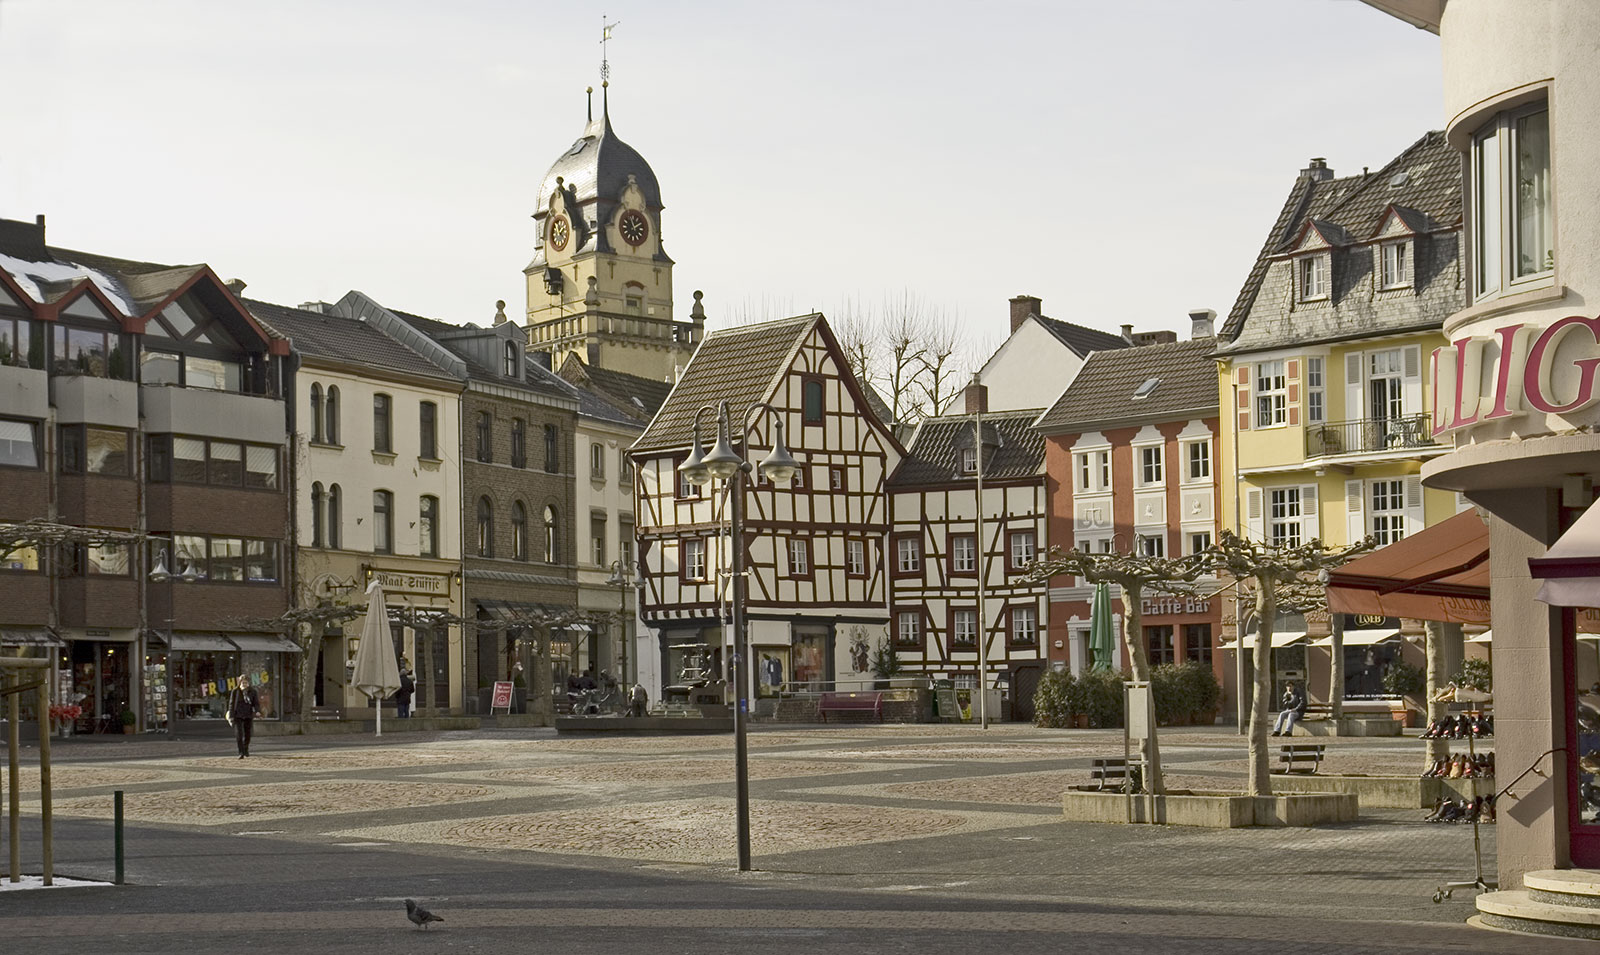 Euskirchen alter markt mit rathausturm.jpg. 